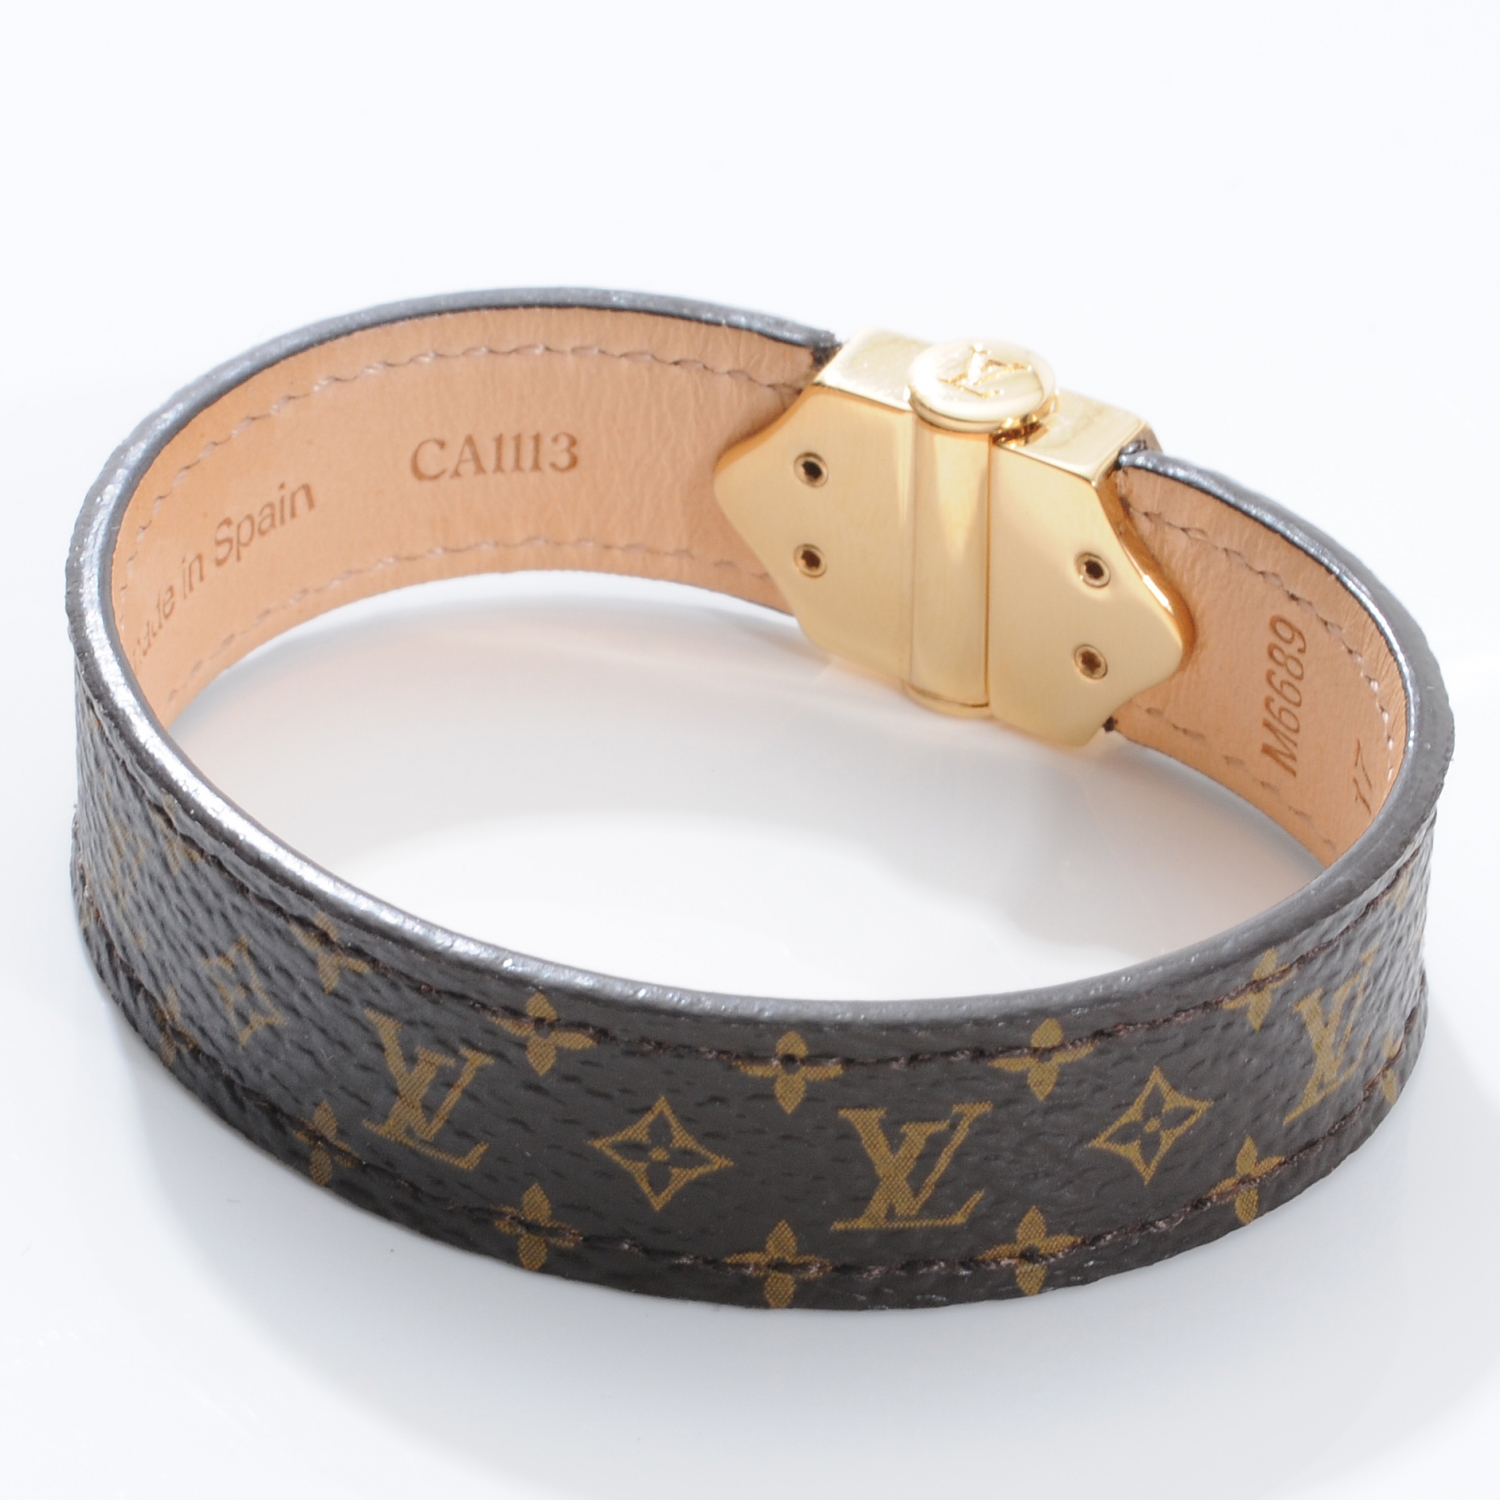 LOUIS VUITTON Monogram Nano Bracelet Size 17 42354